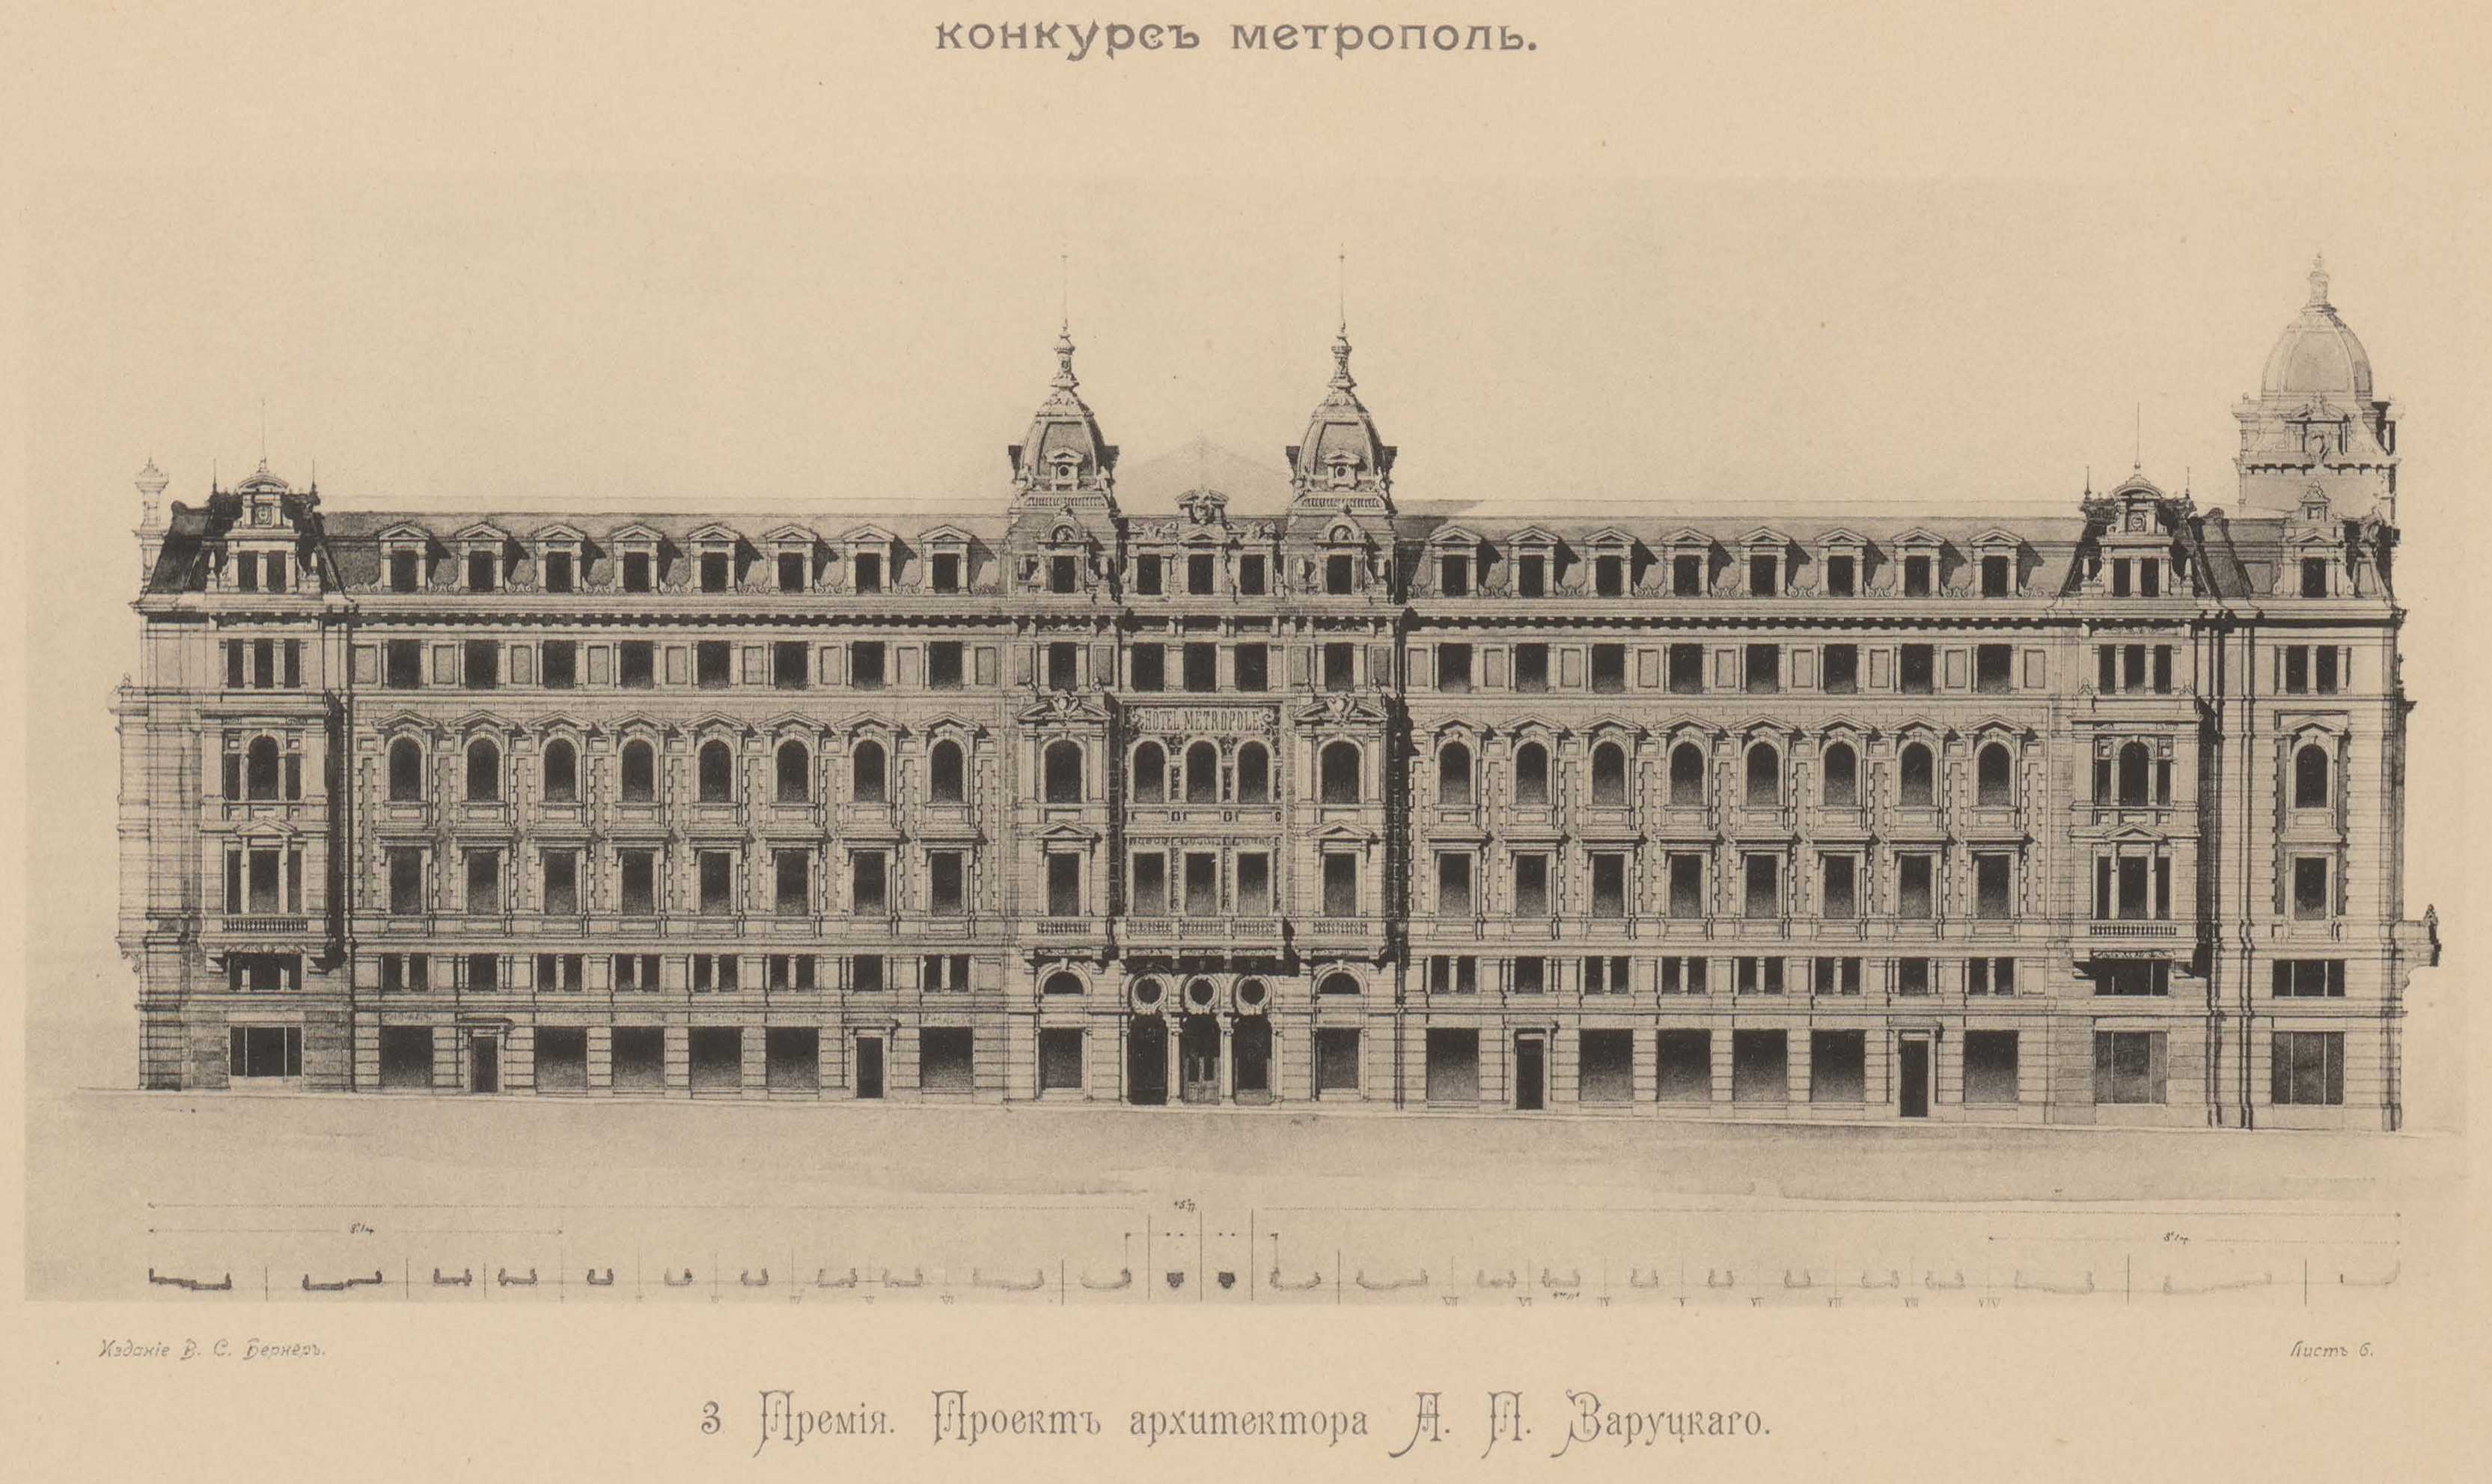 Конкурс на фасад гостиницы «Метрополь» (1899). 3-я премия. Проект архитектора П. А. Заруцкого